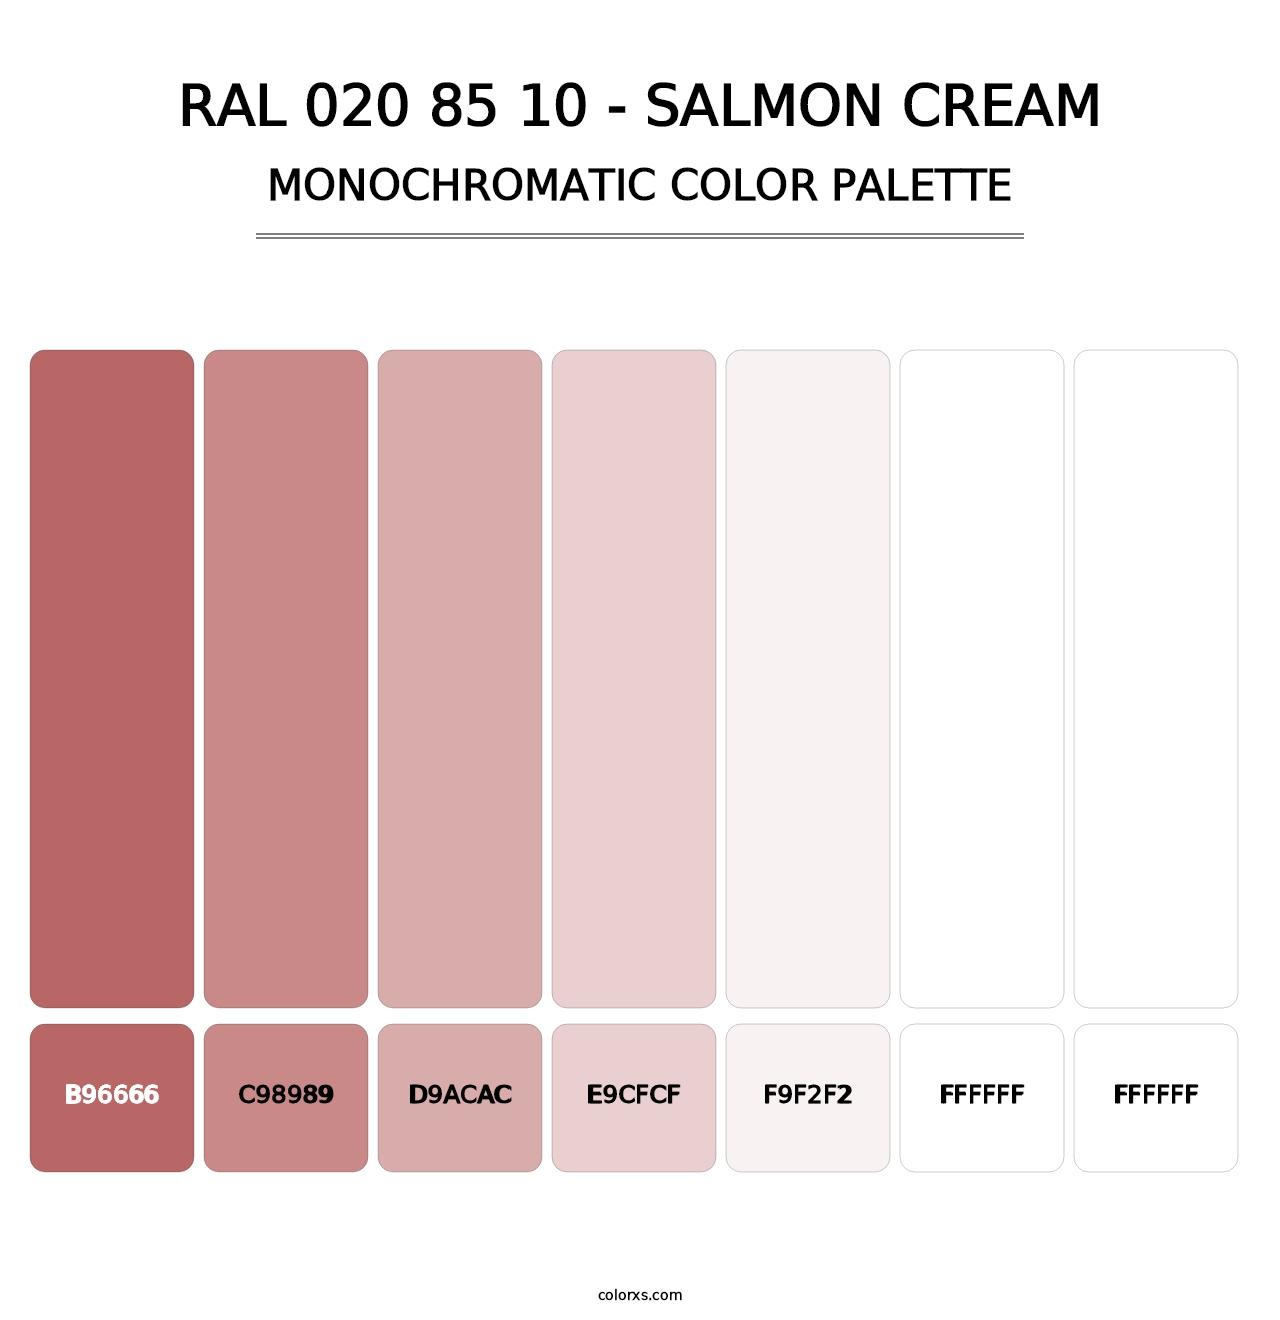 RAL 020 85 10 - Salmon Cream - Monochromatic Color Palette